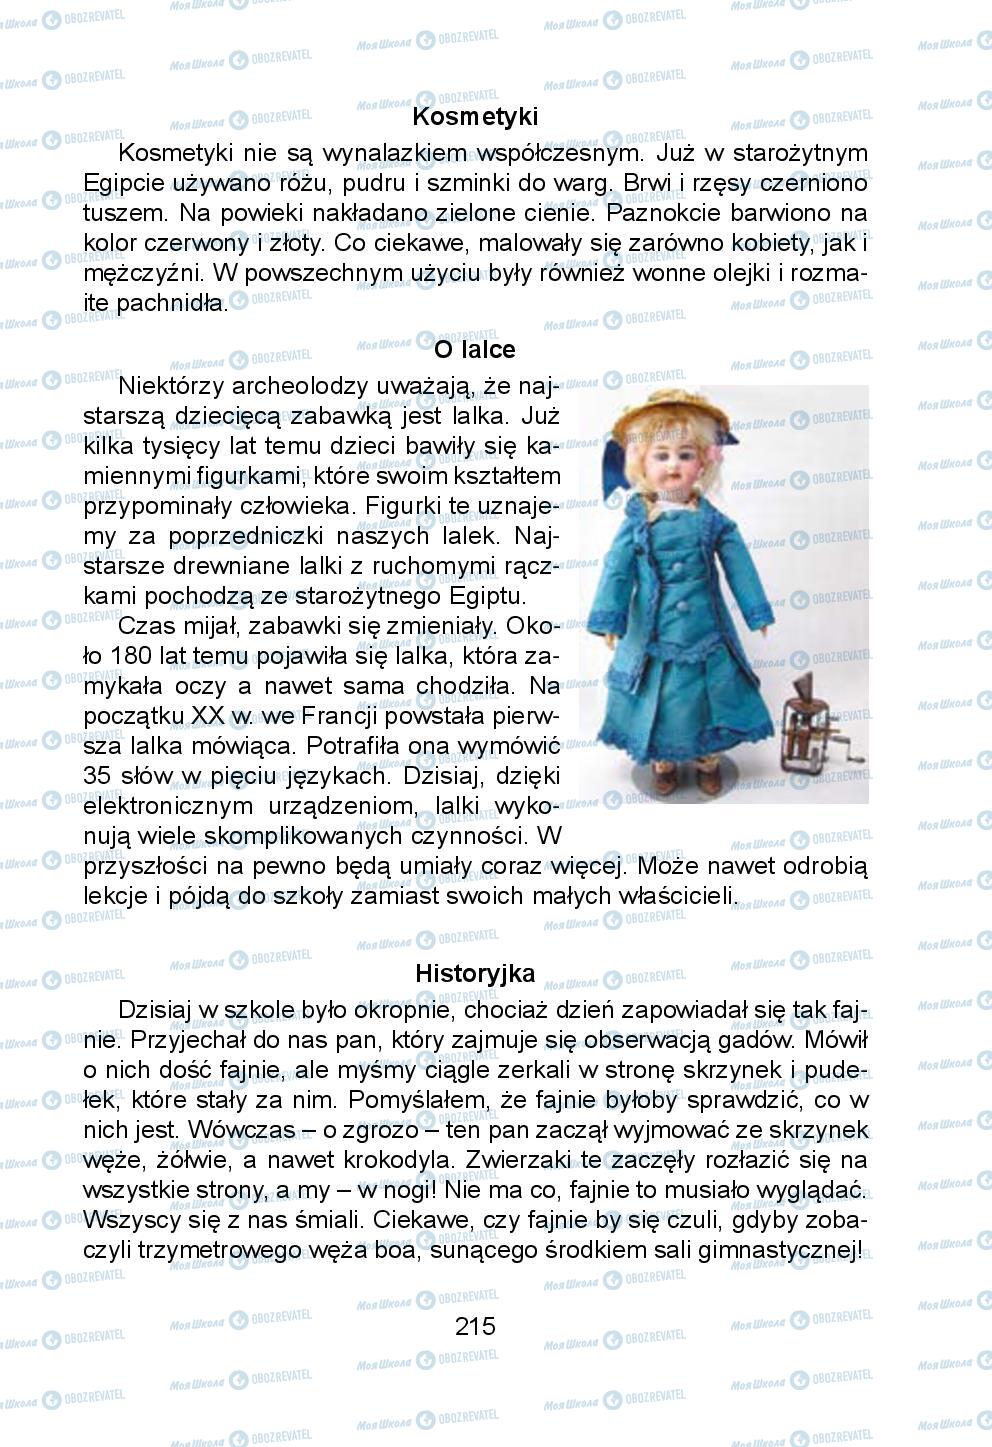 Підручники Українська мова 5 клас сторінка 215